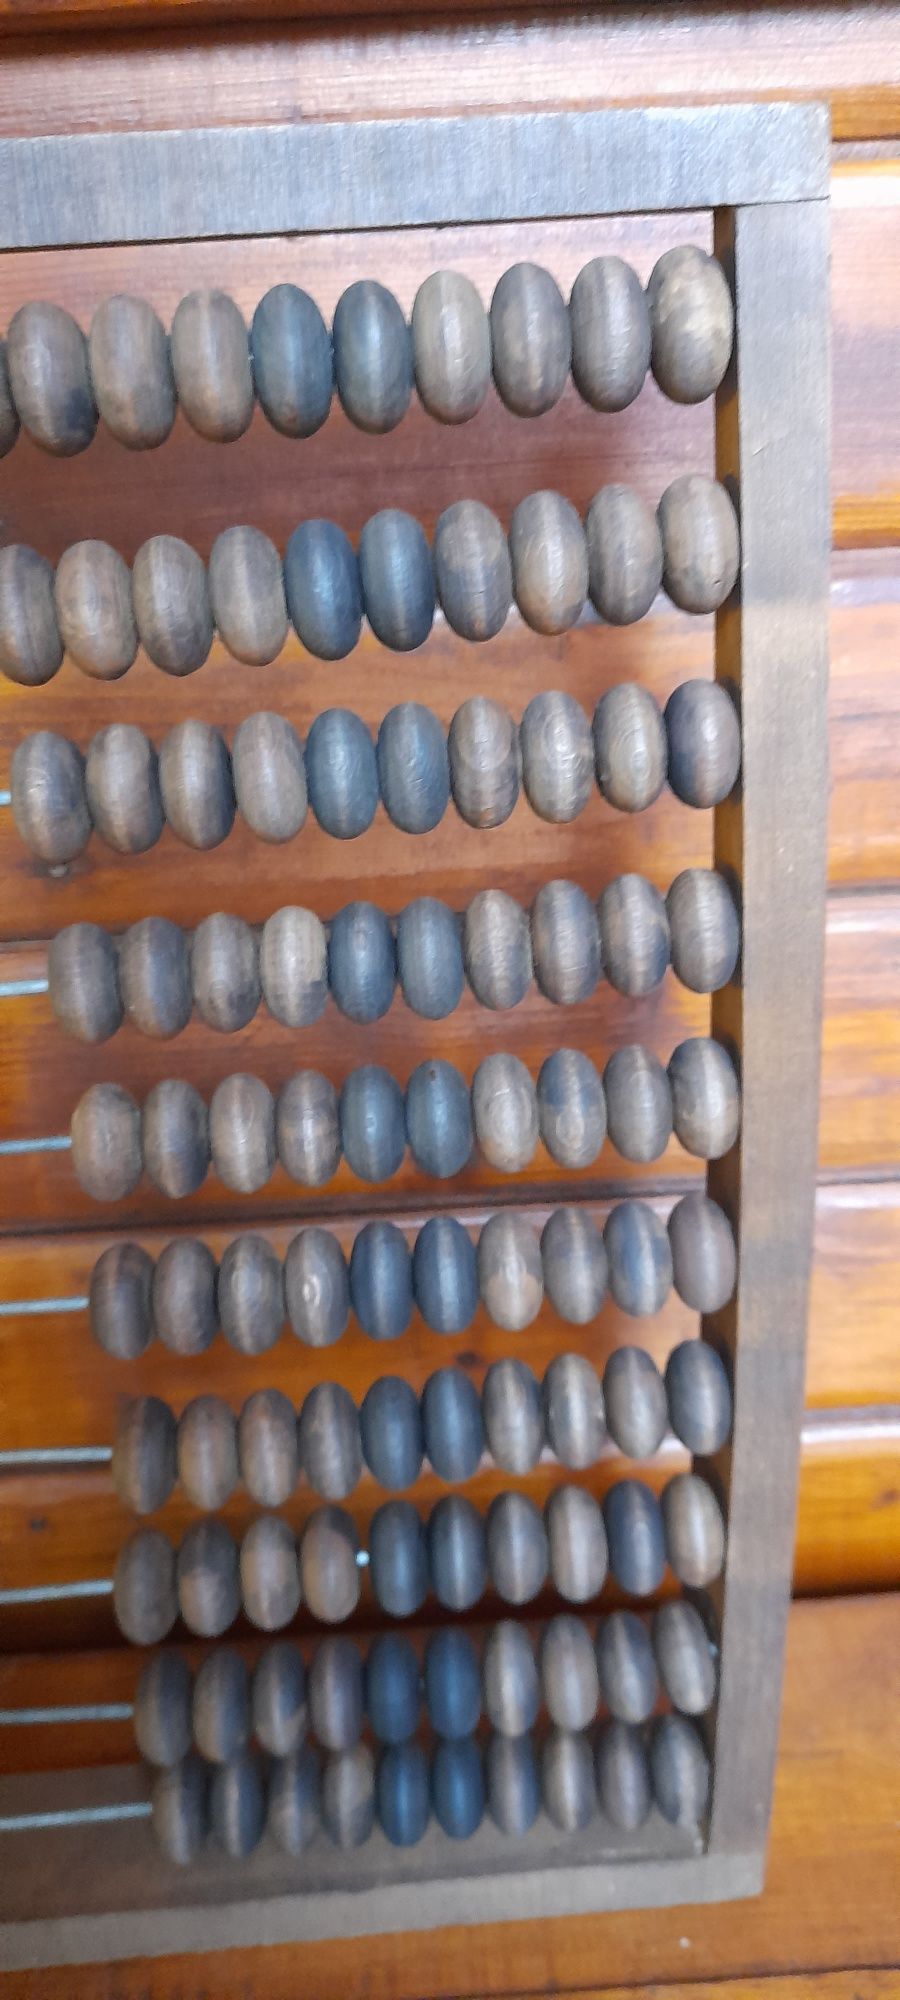 Veche socotitoare (abac) format mare, perioada interbelica